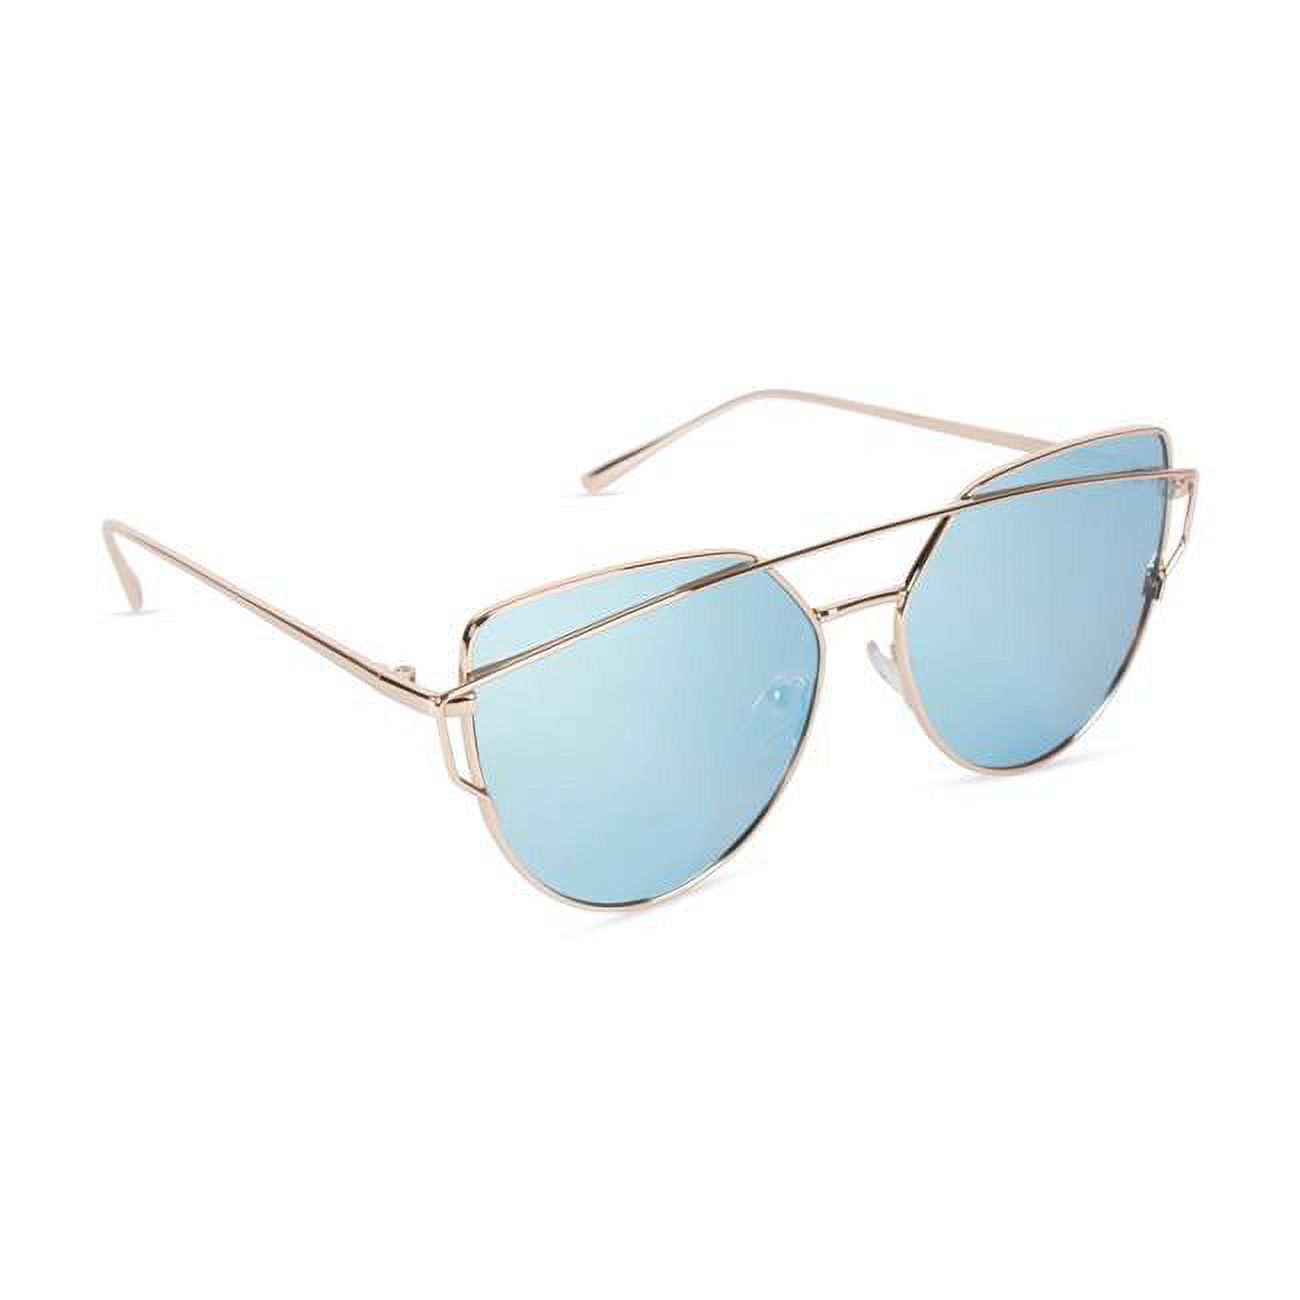 Inner Vision Cat Eye Aviator Metal Frame Cross Bar Sunglasses, Flat Polarized Lens for Women, Revo 100% UV Protection With Case - Gold Frame, Ice Blue Lens - image 1 of 10